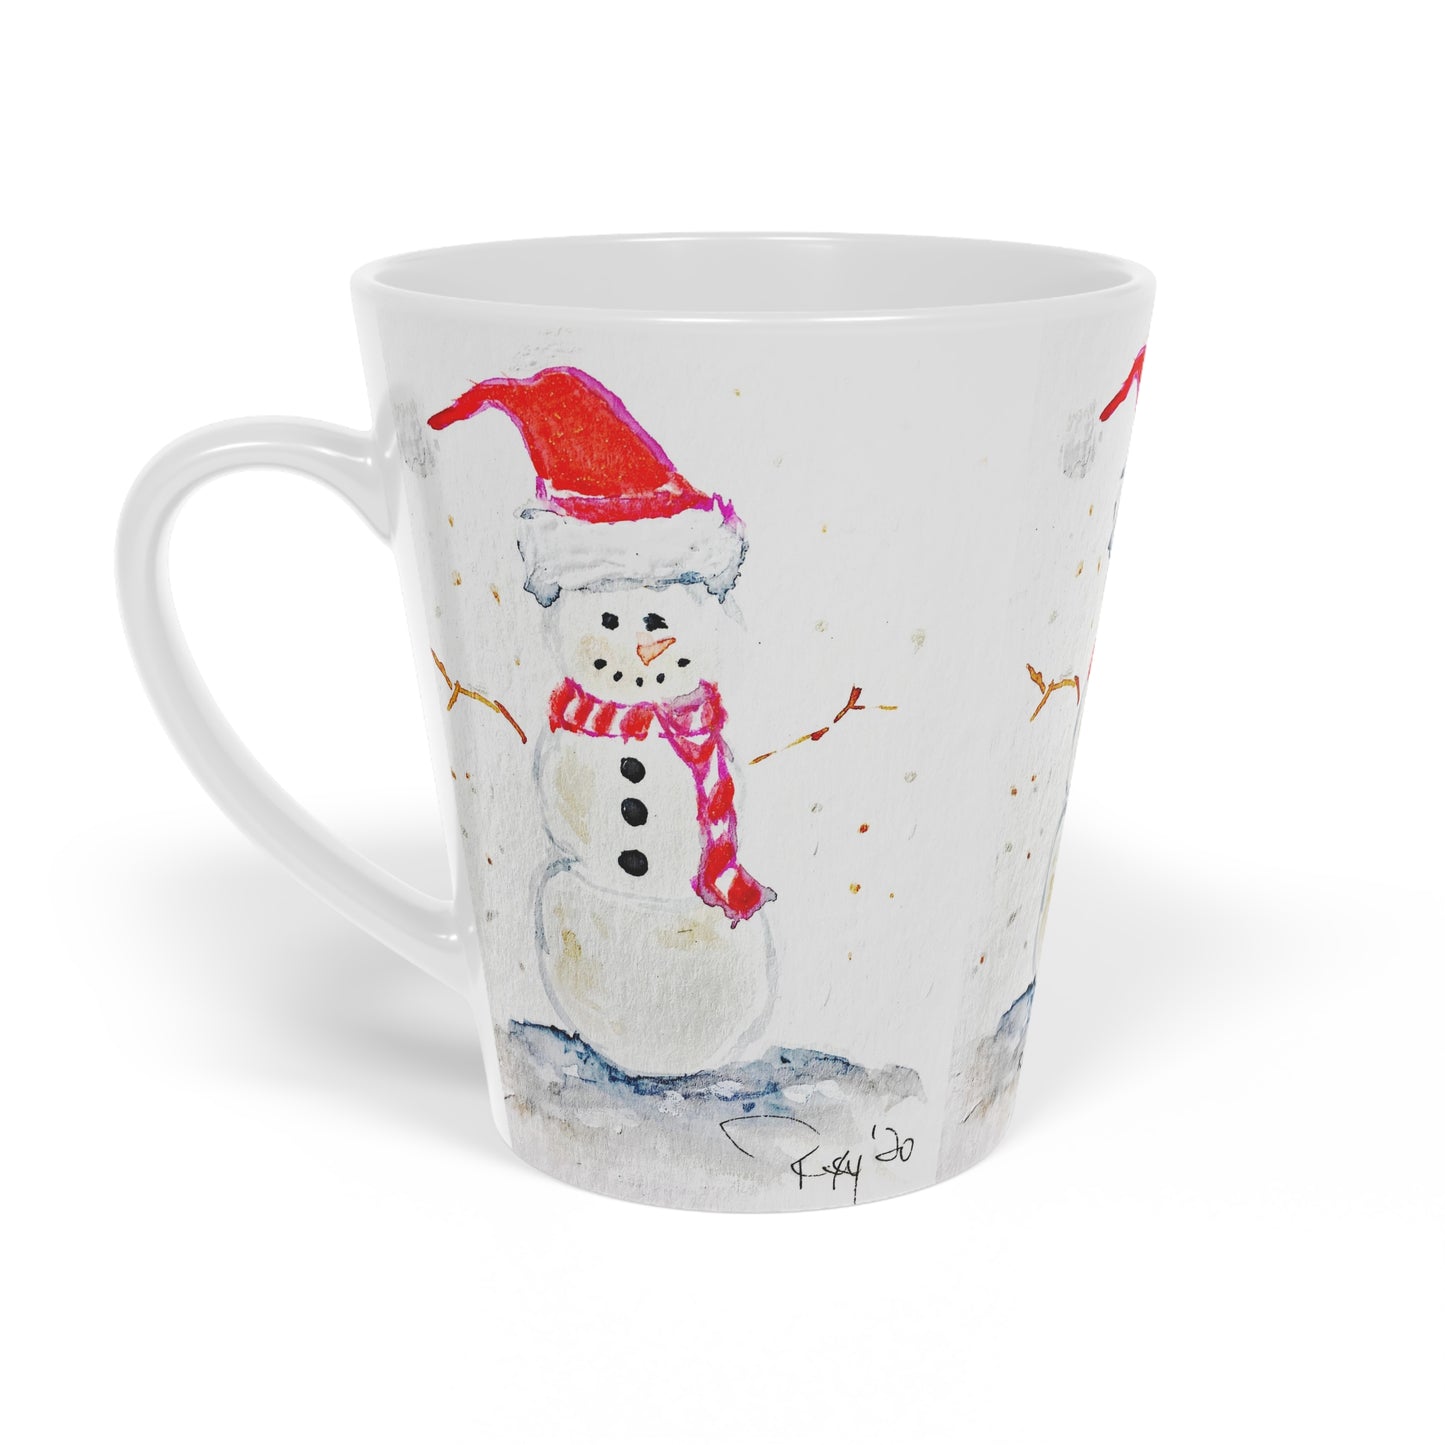 Snowman  Latte Mug, 12oz